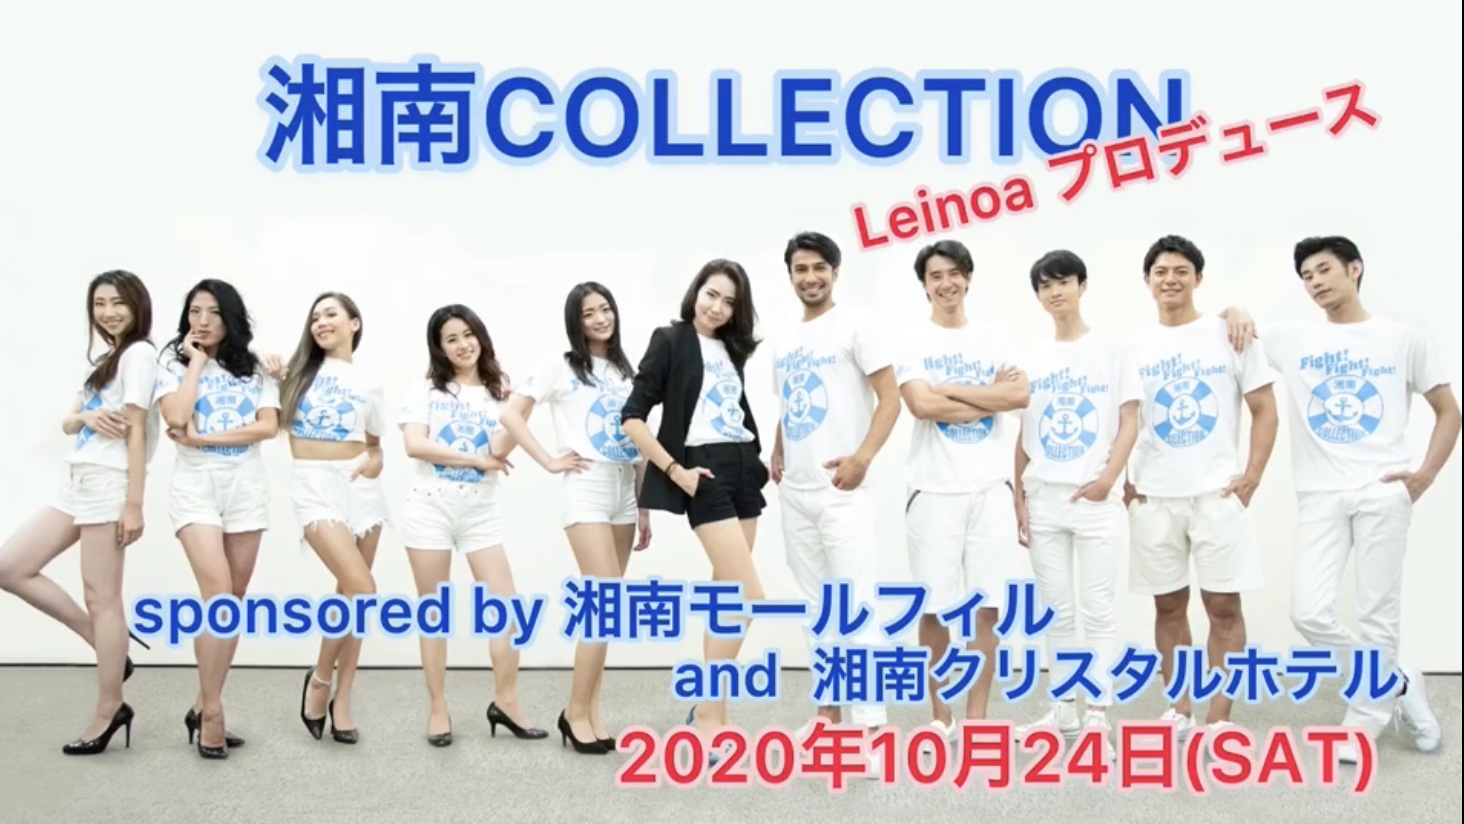 藤沢 10 24 Leinoa 湘南最大のファッションショー 湘南collection 開催 湘南lovers